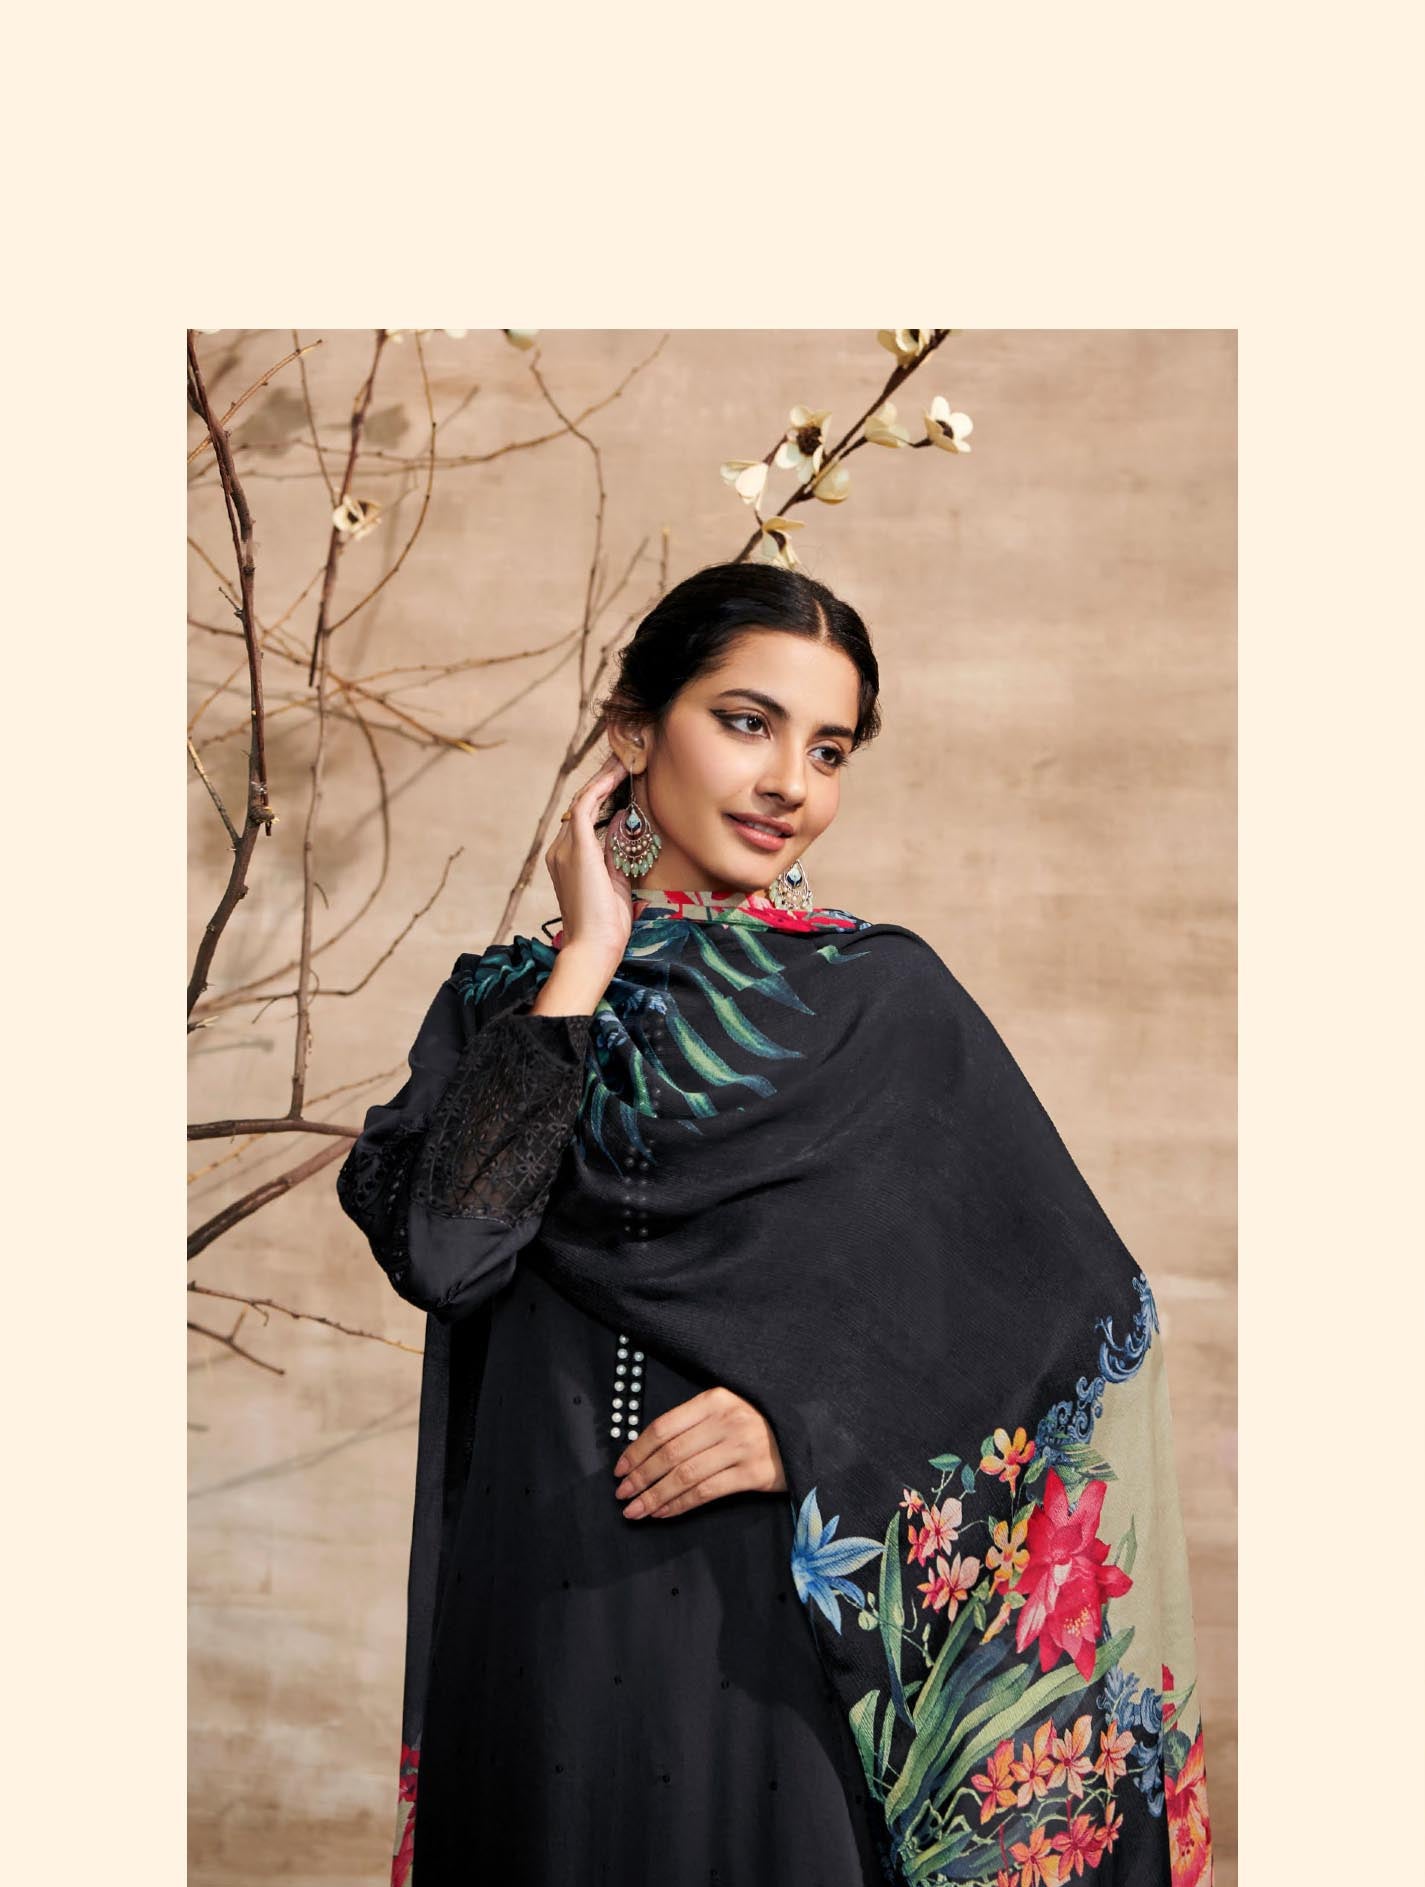 Ganga Vinaya 1629 Silk Dress Material Online Suits Wholesaler